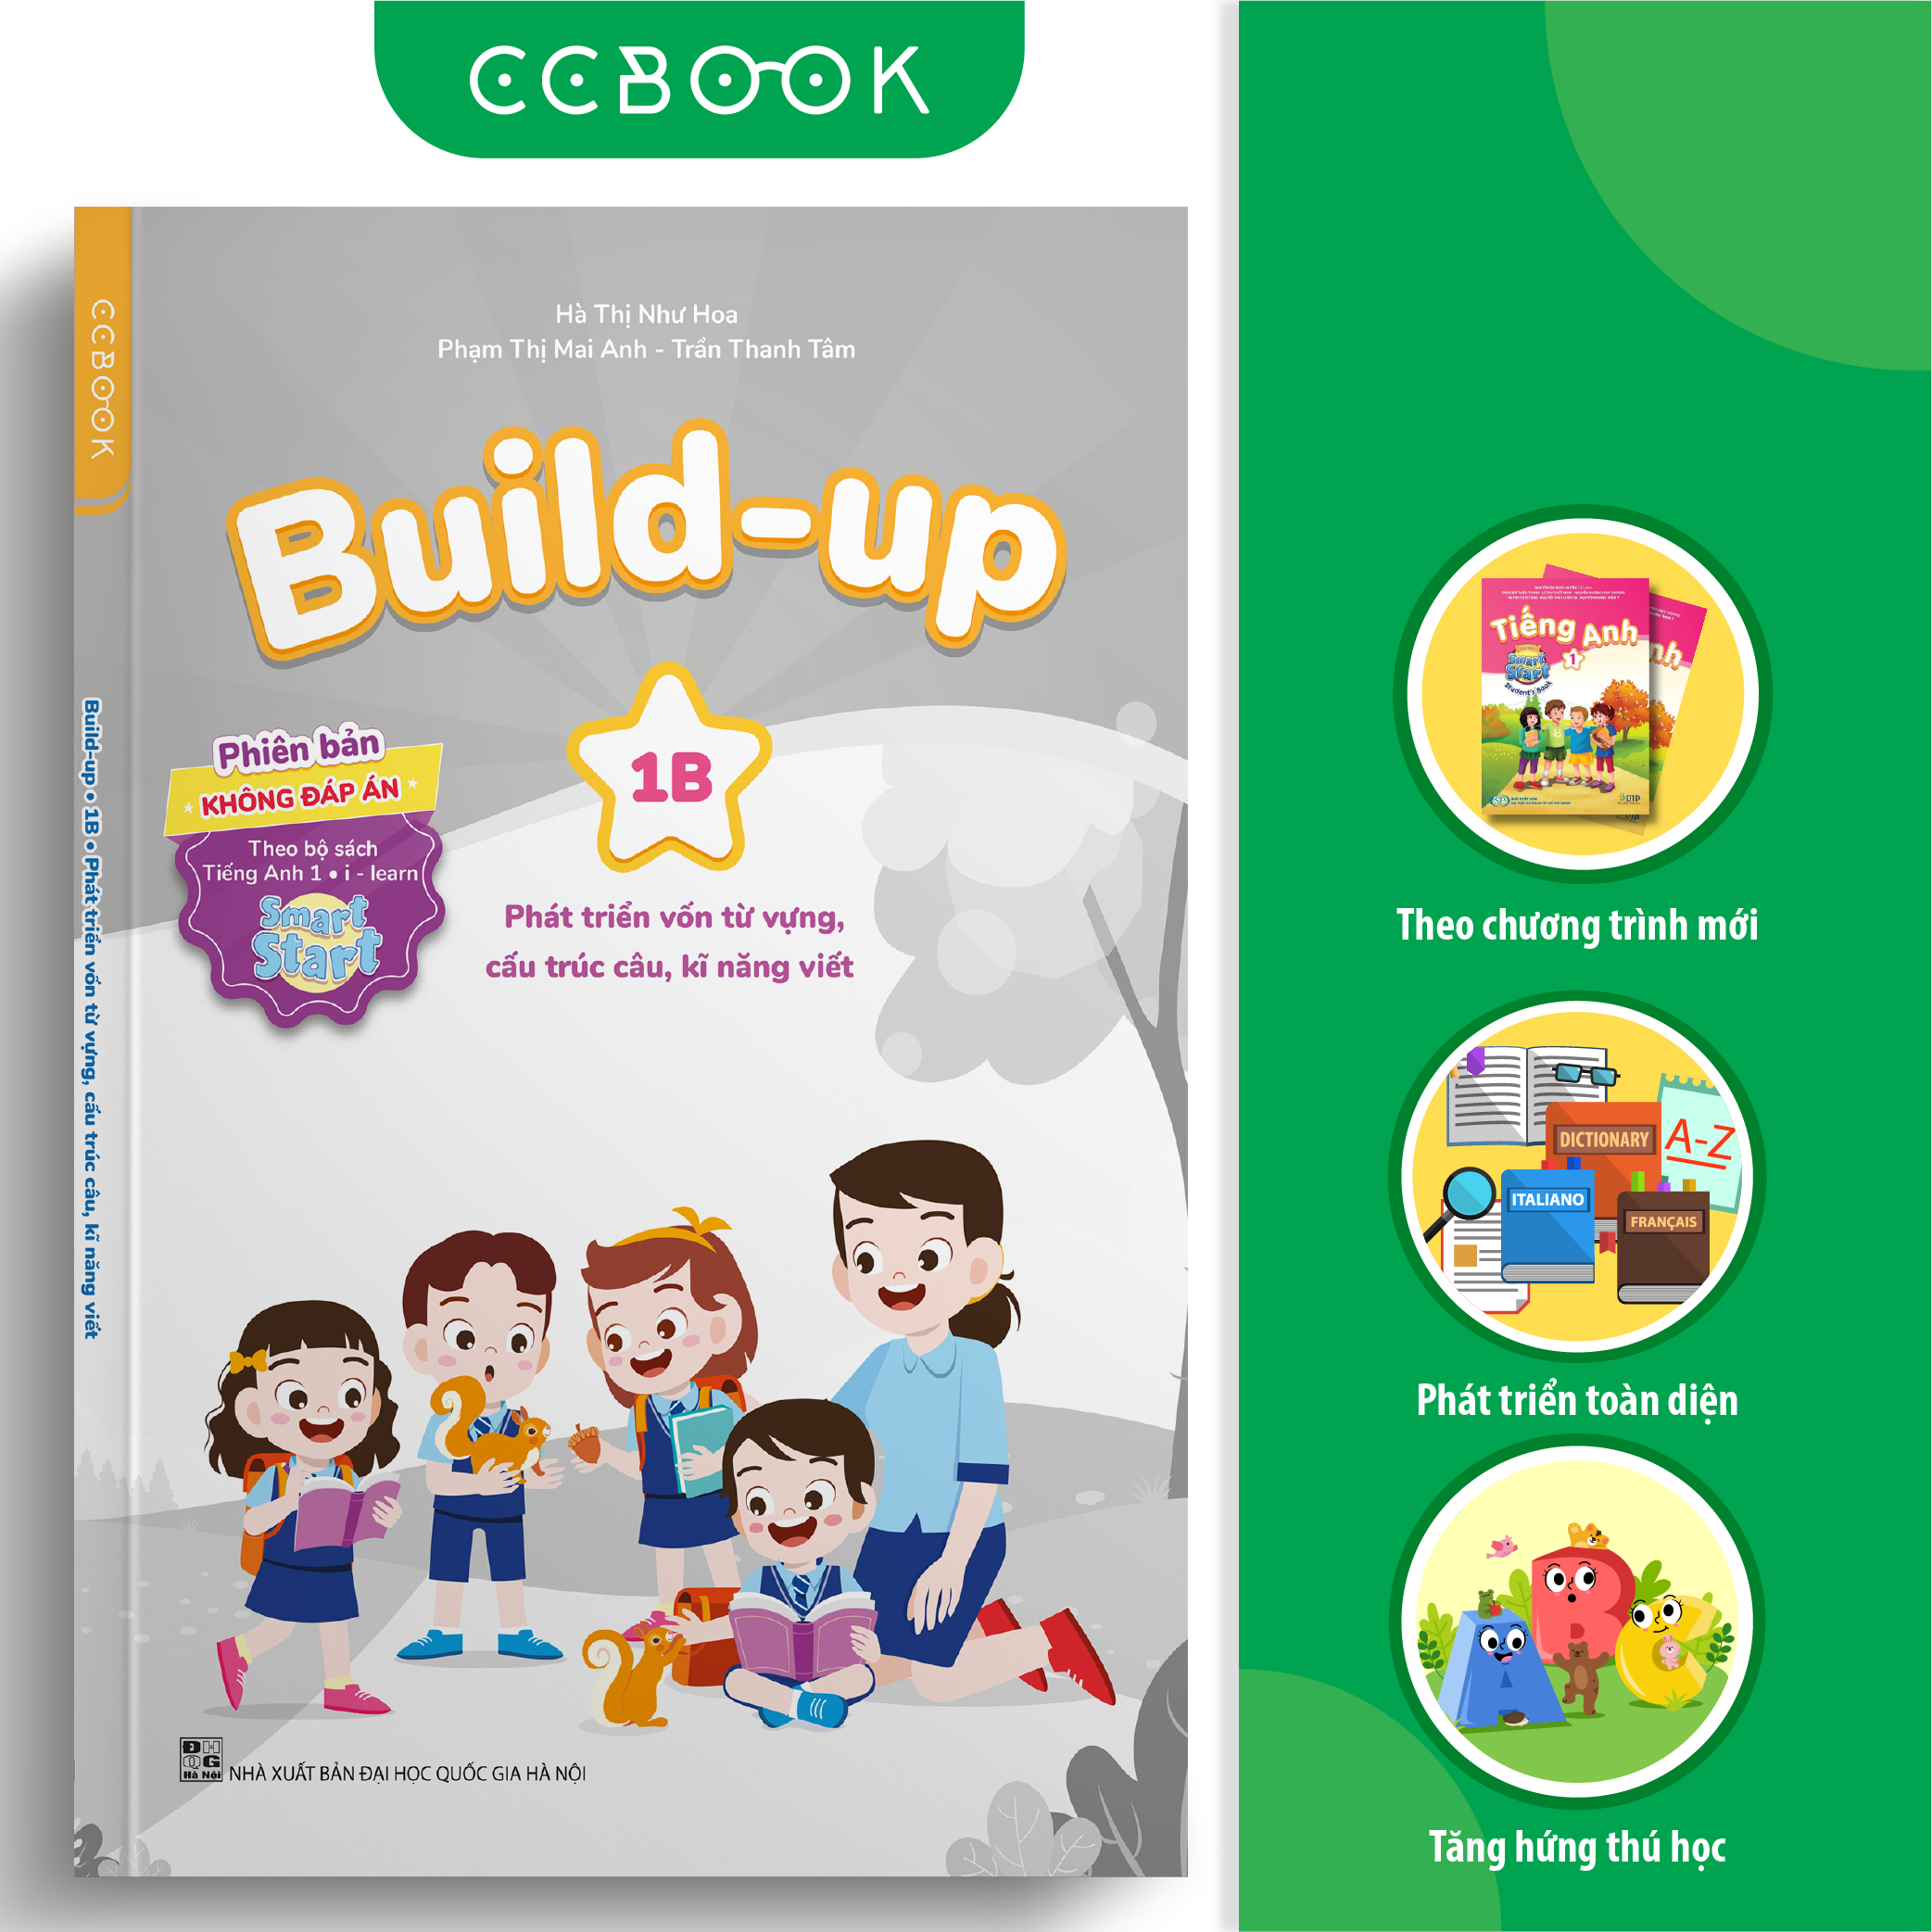 Build-up 1B Phát triển vốn từ vựng, cấu trúc câu, kĩ năng viết (Phiên bản không đáp án) (Theo bộ sách Tiếng Anh 1 - I-learn Smart Start)